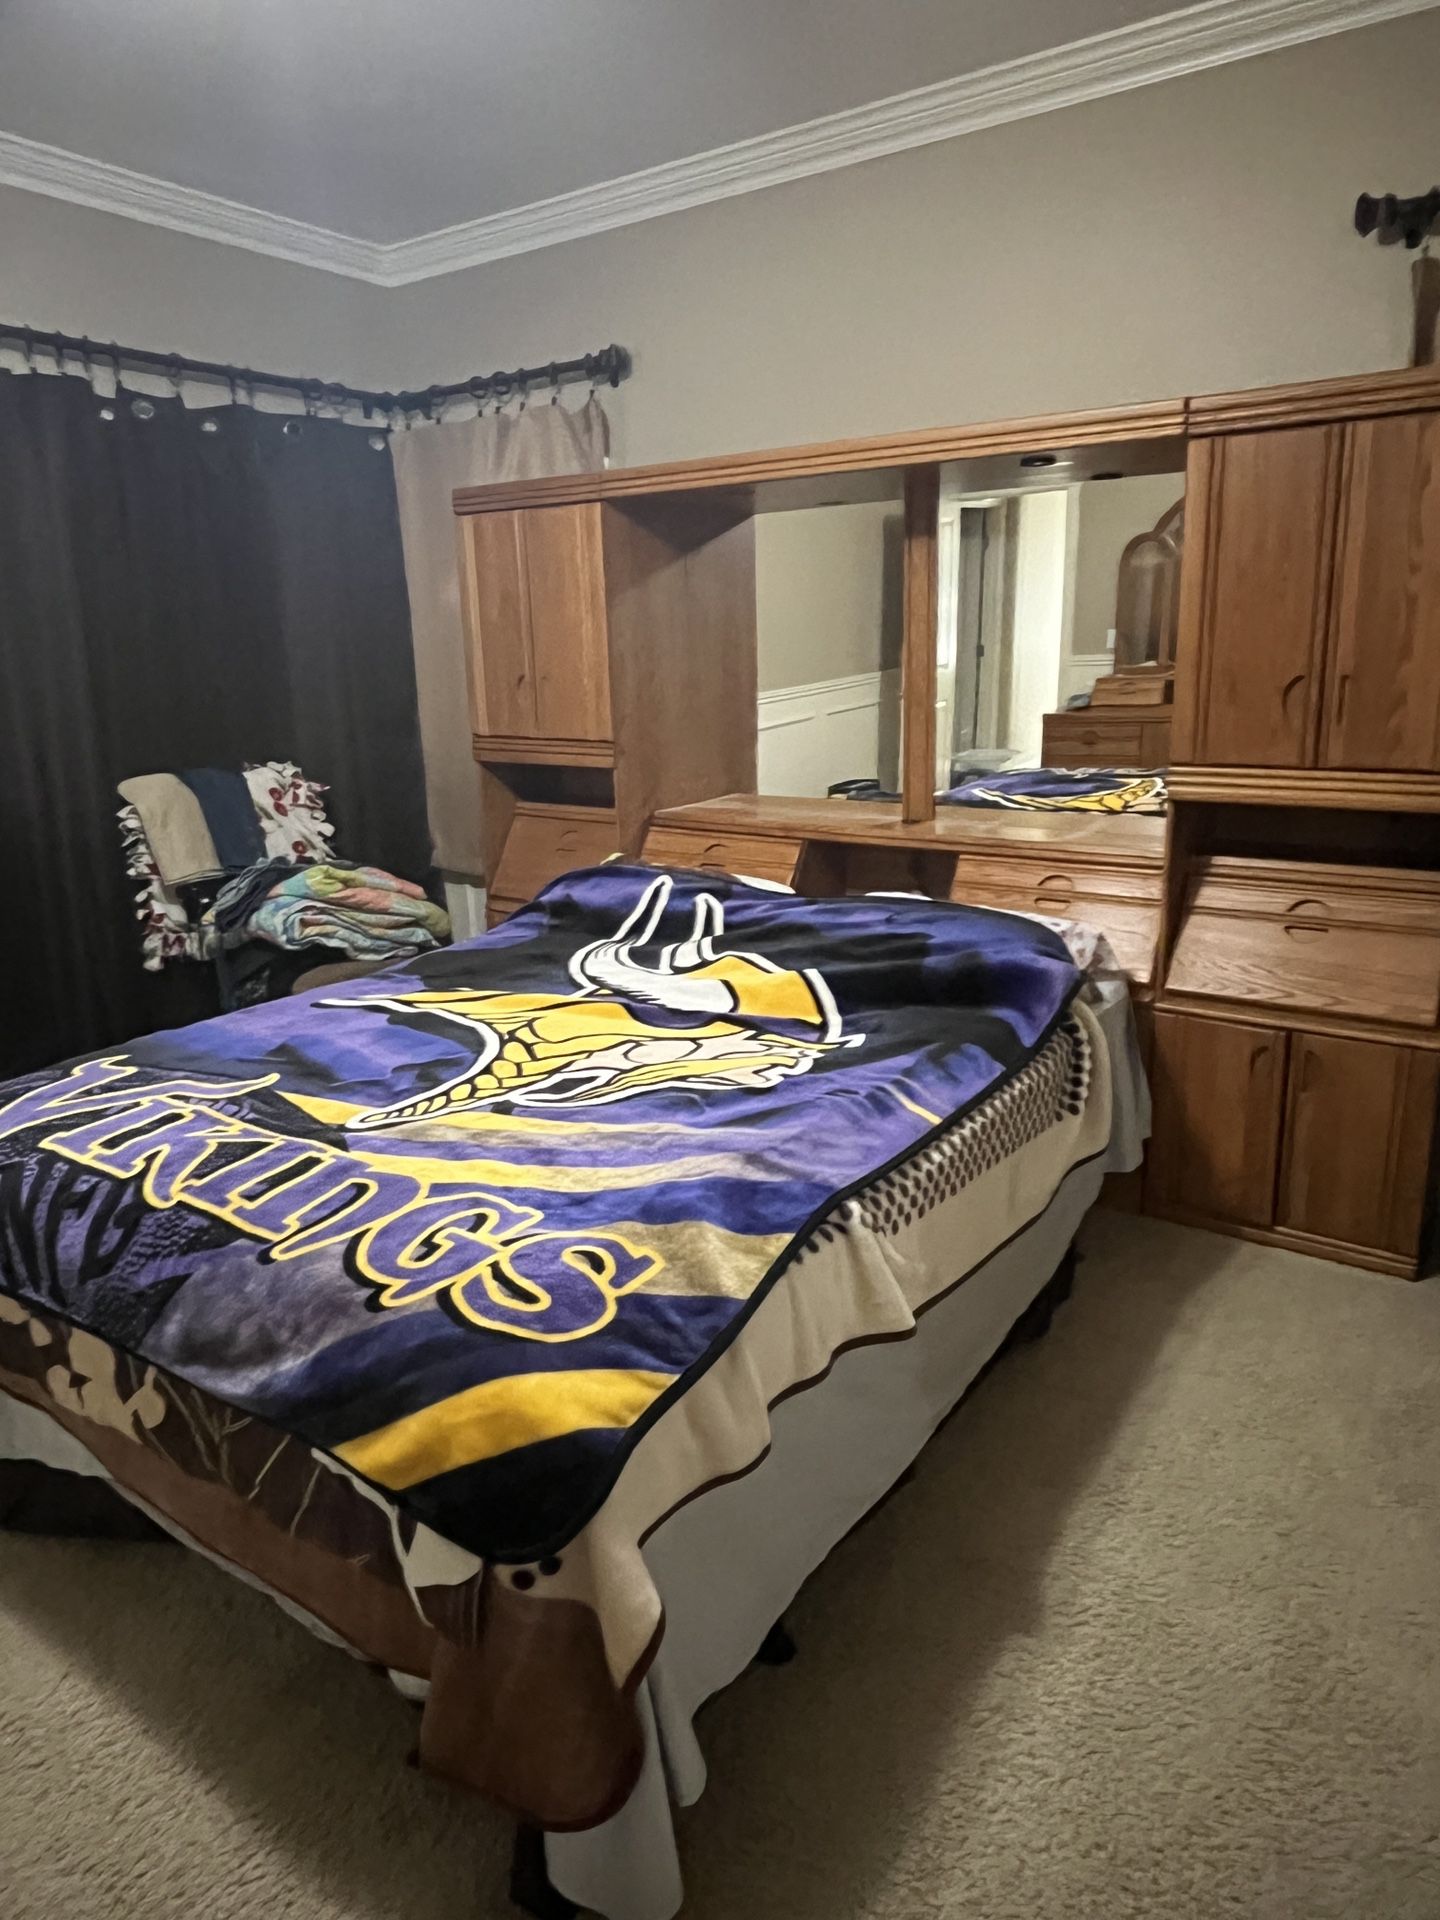 Queen oak bedroom set, vanity dresser, mattress